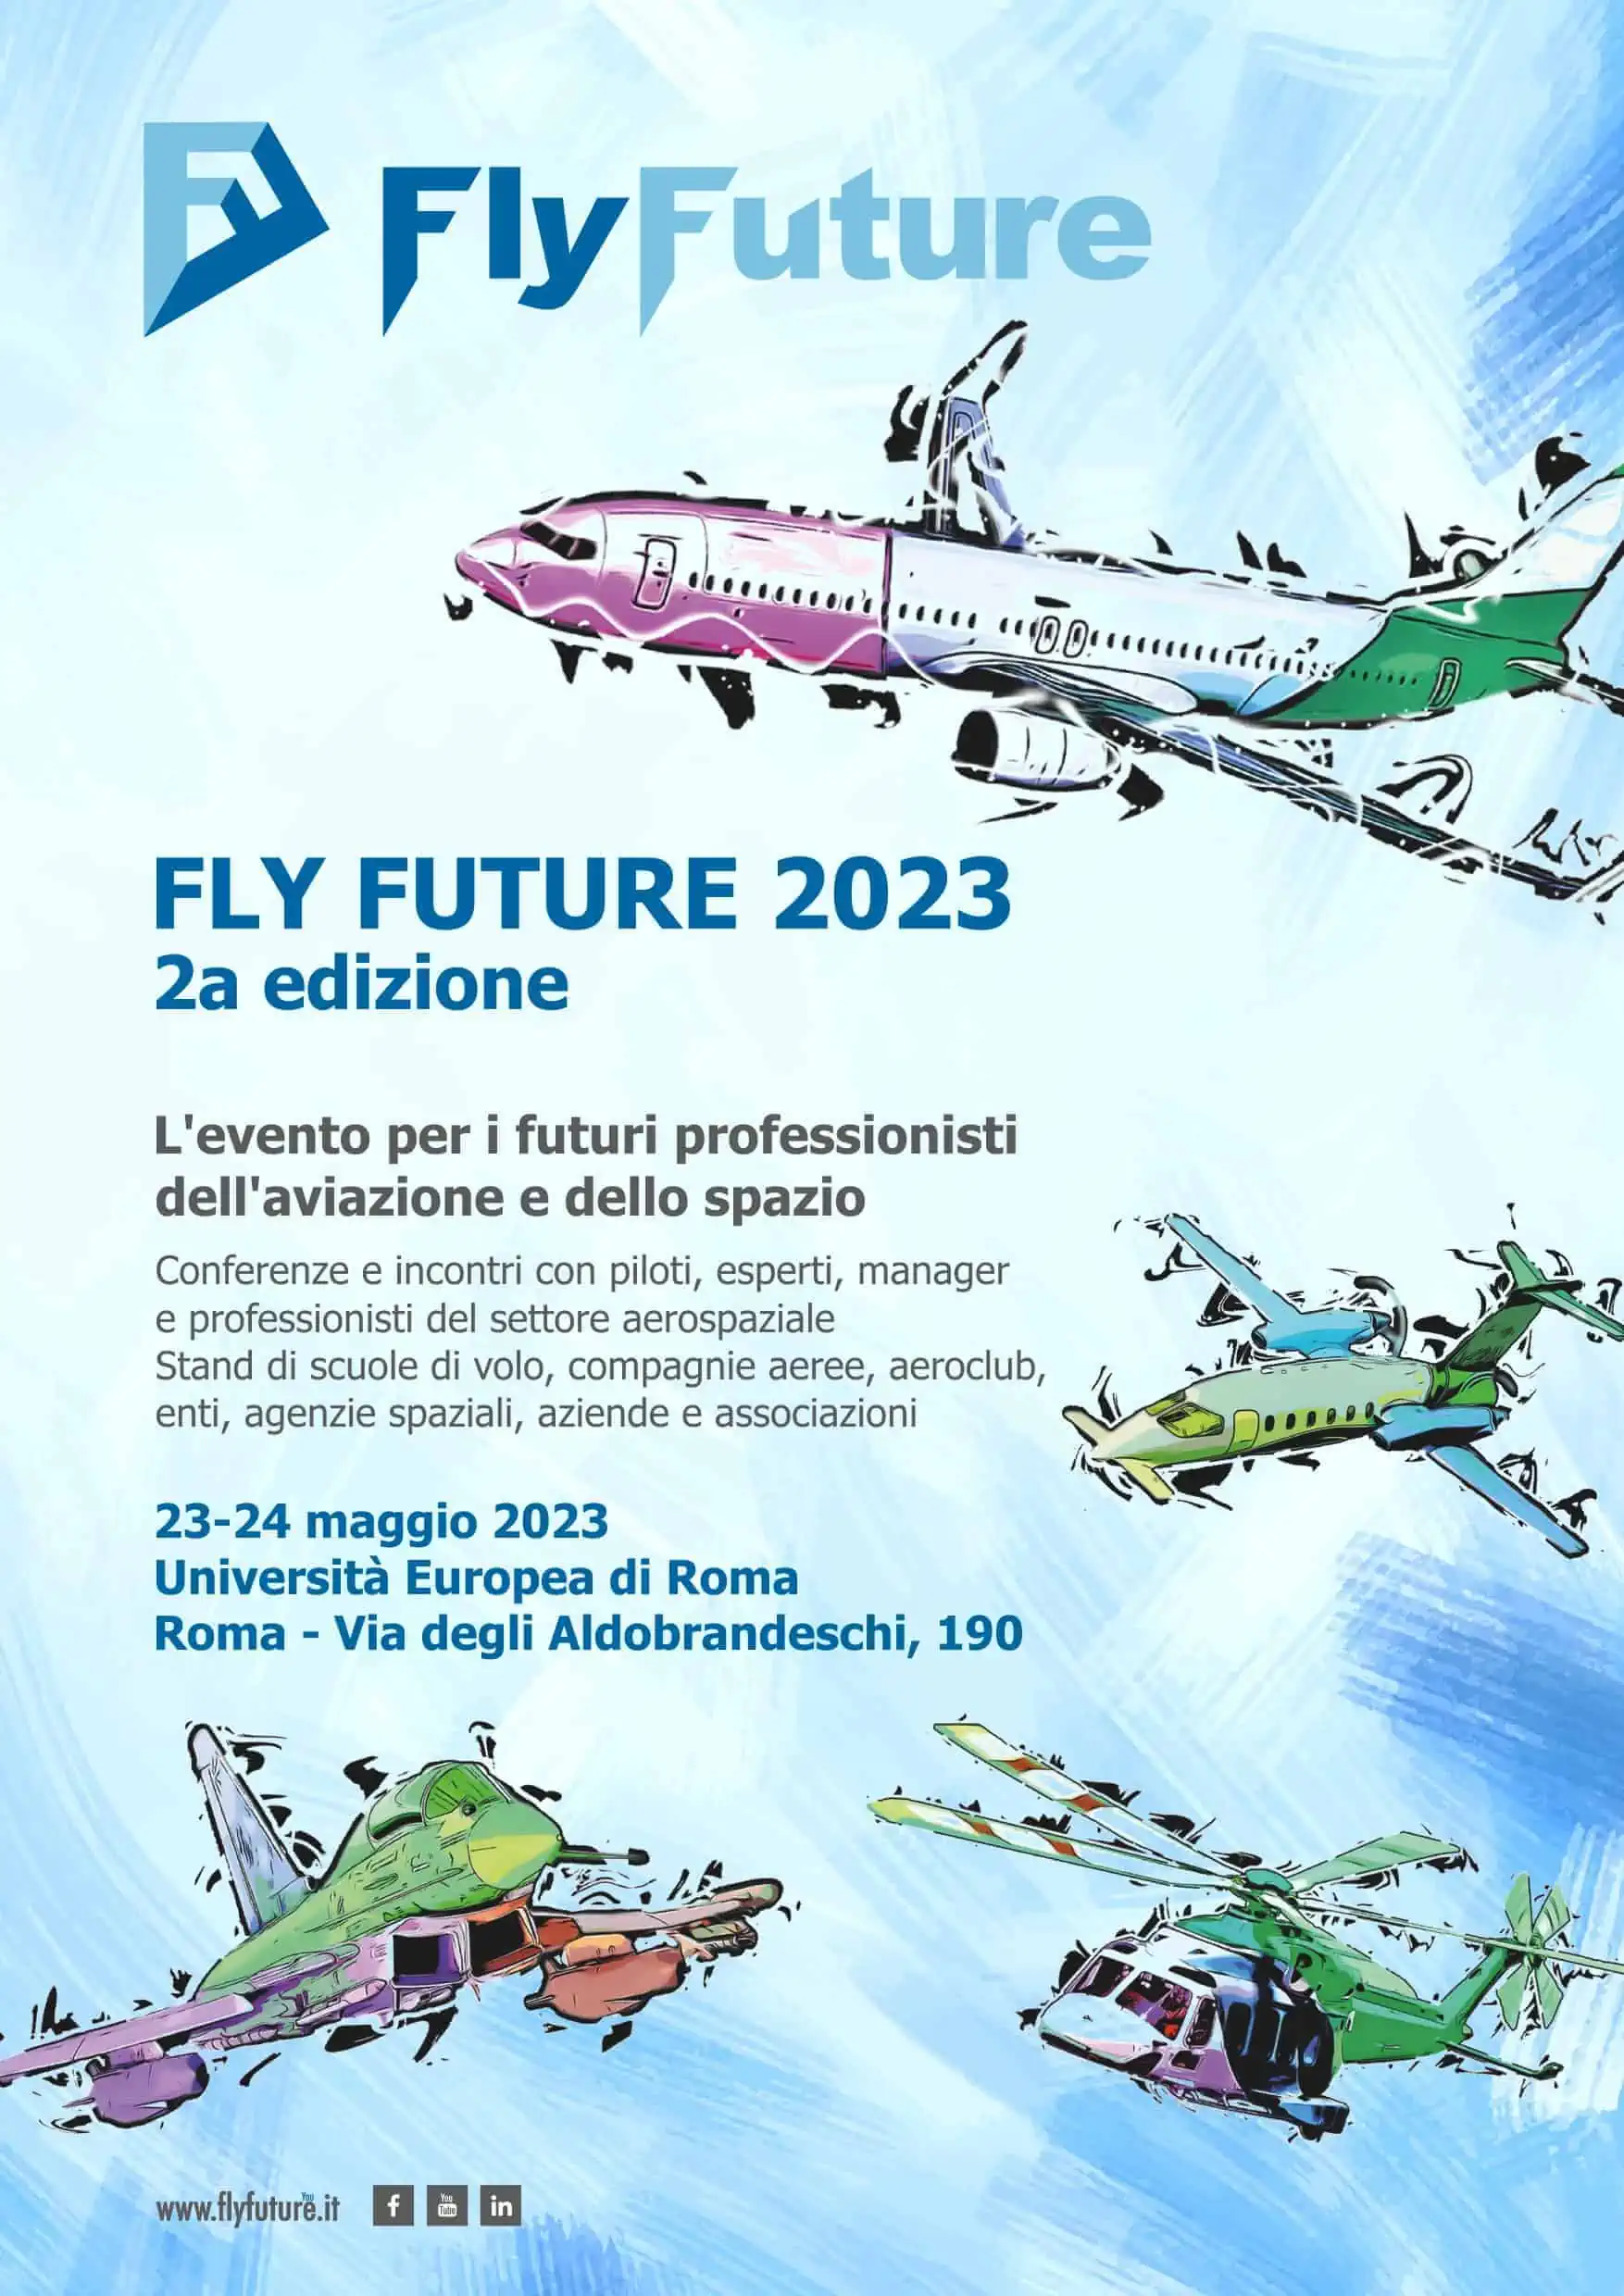 Fly Future 2023, aviazione e spazio